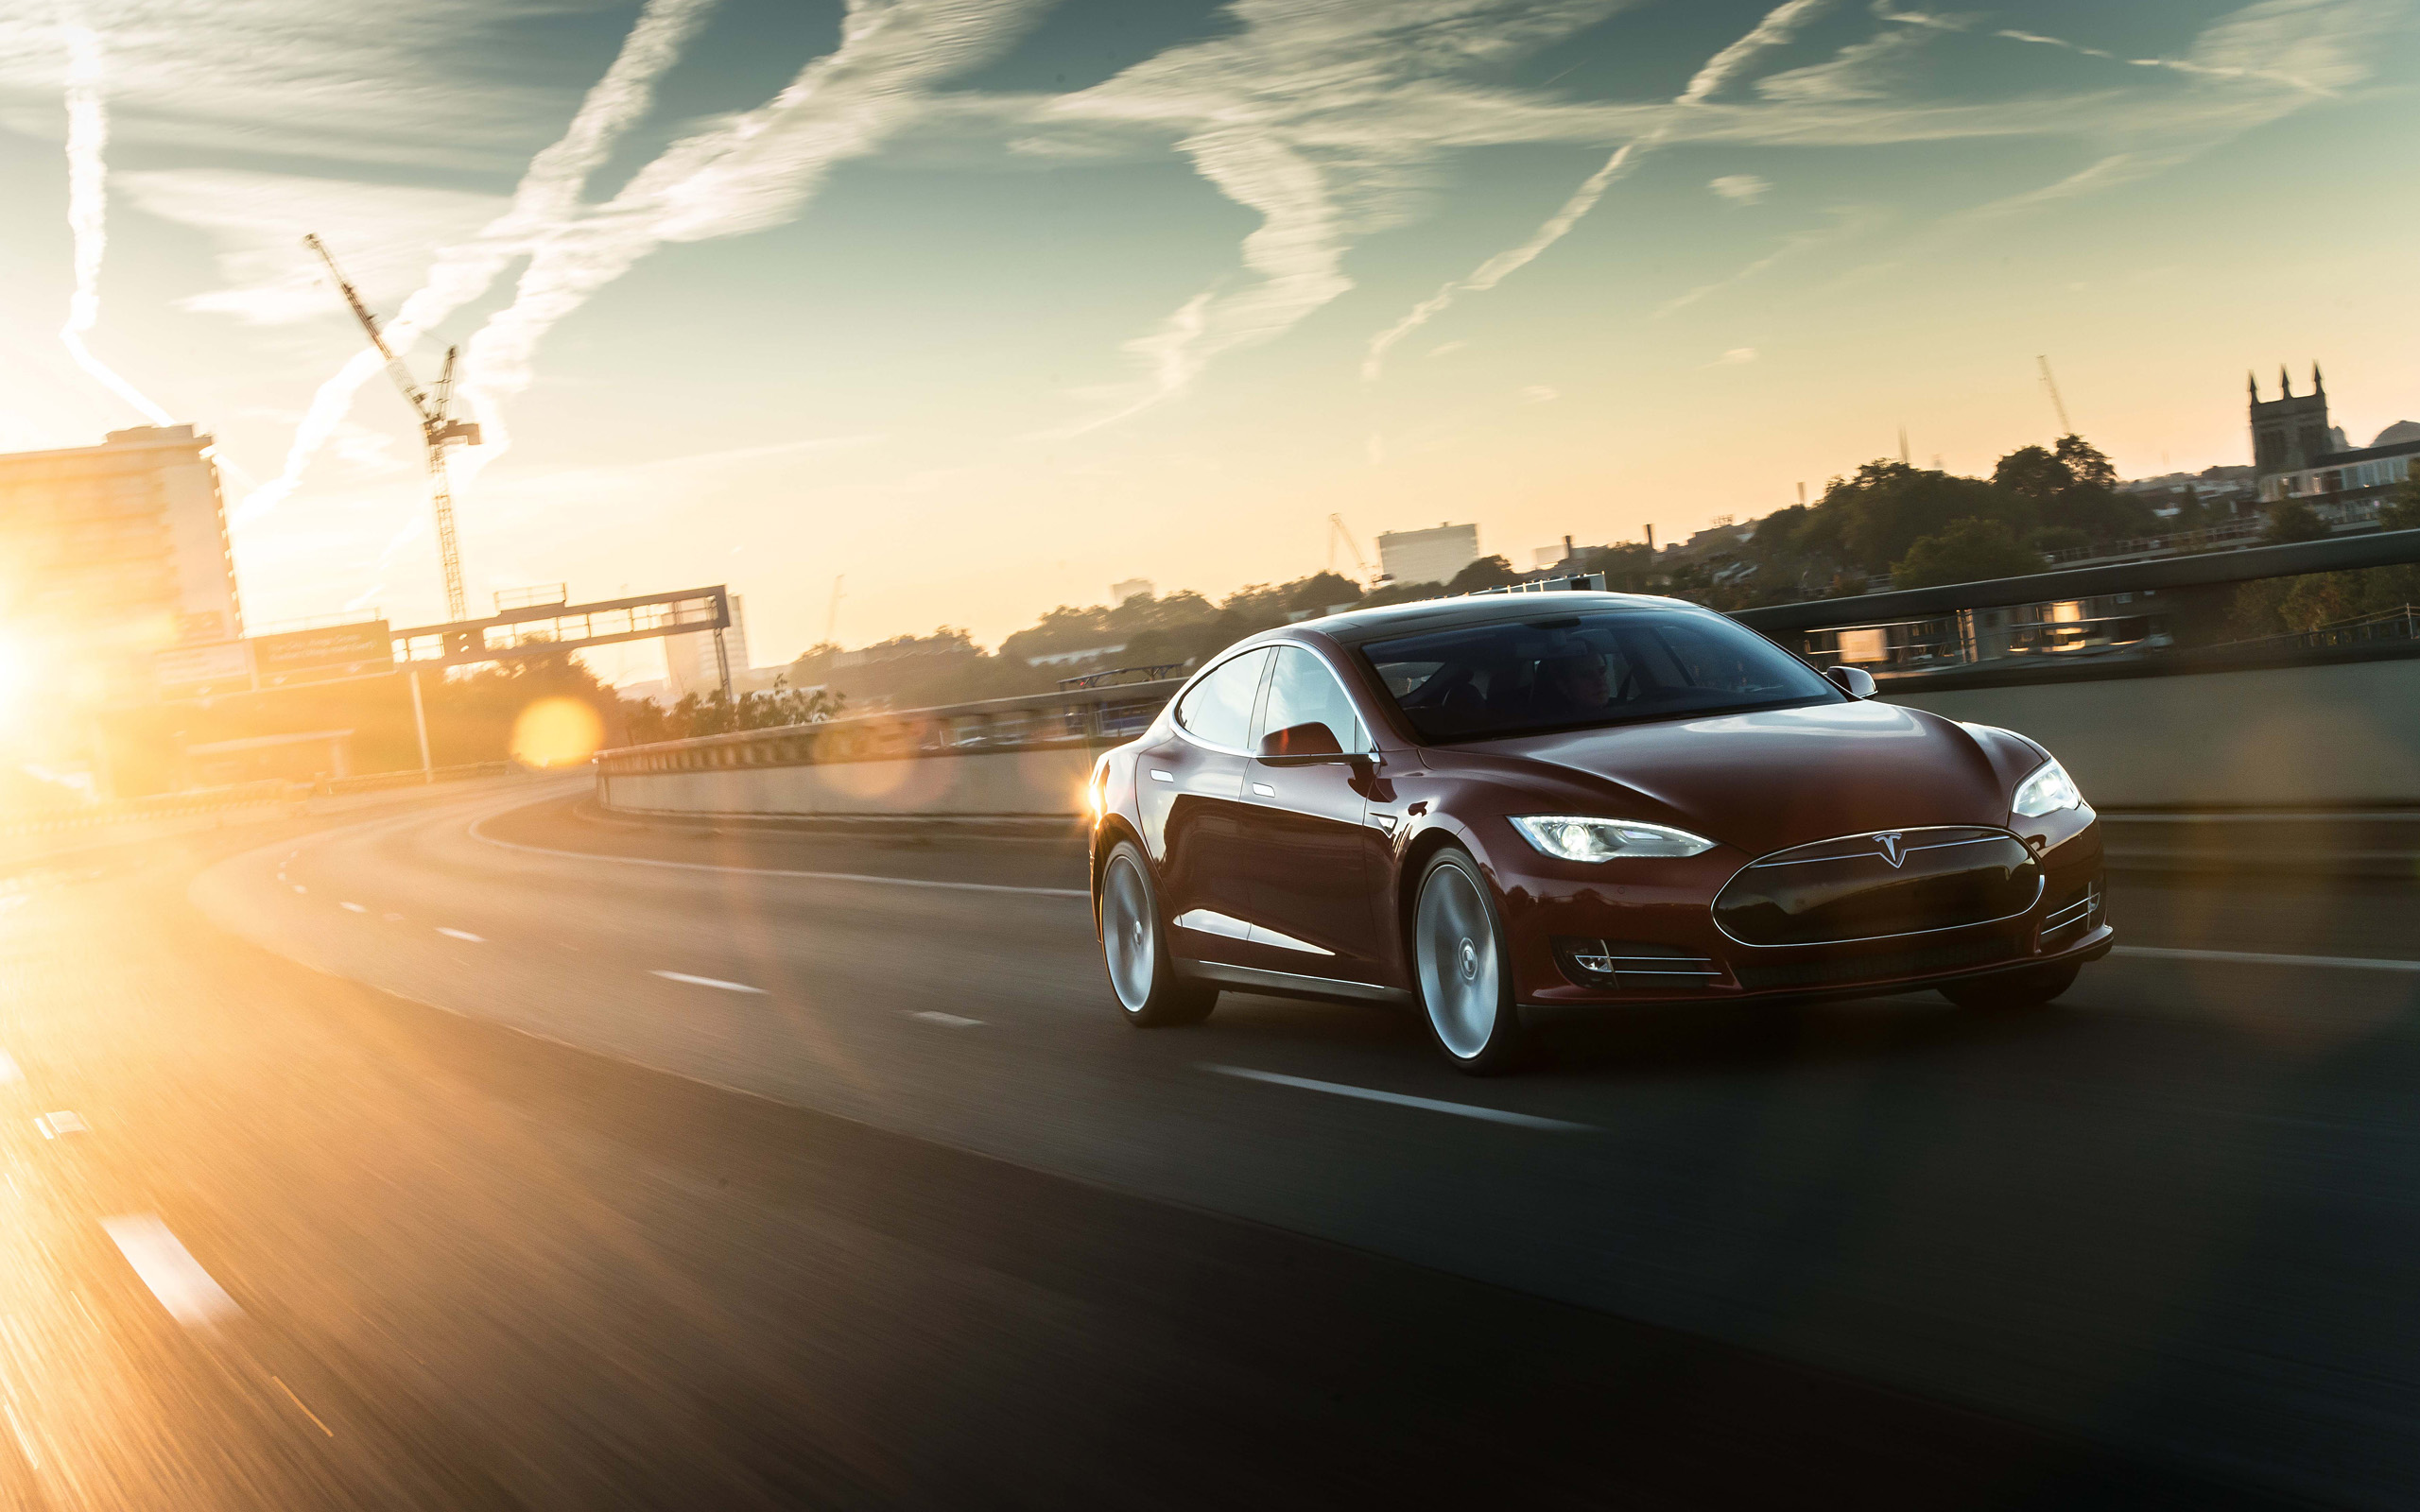 2014 Tesla Model S supercar d wallpaper 2560x1600 207132